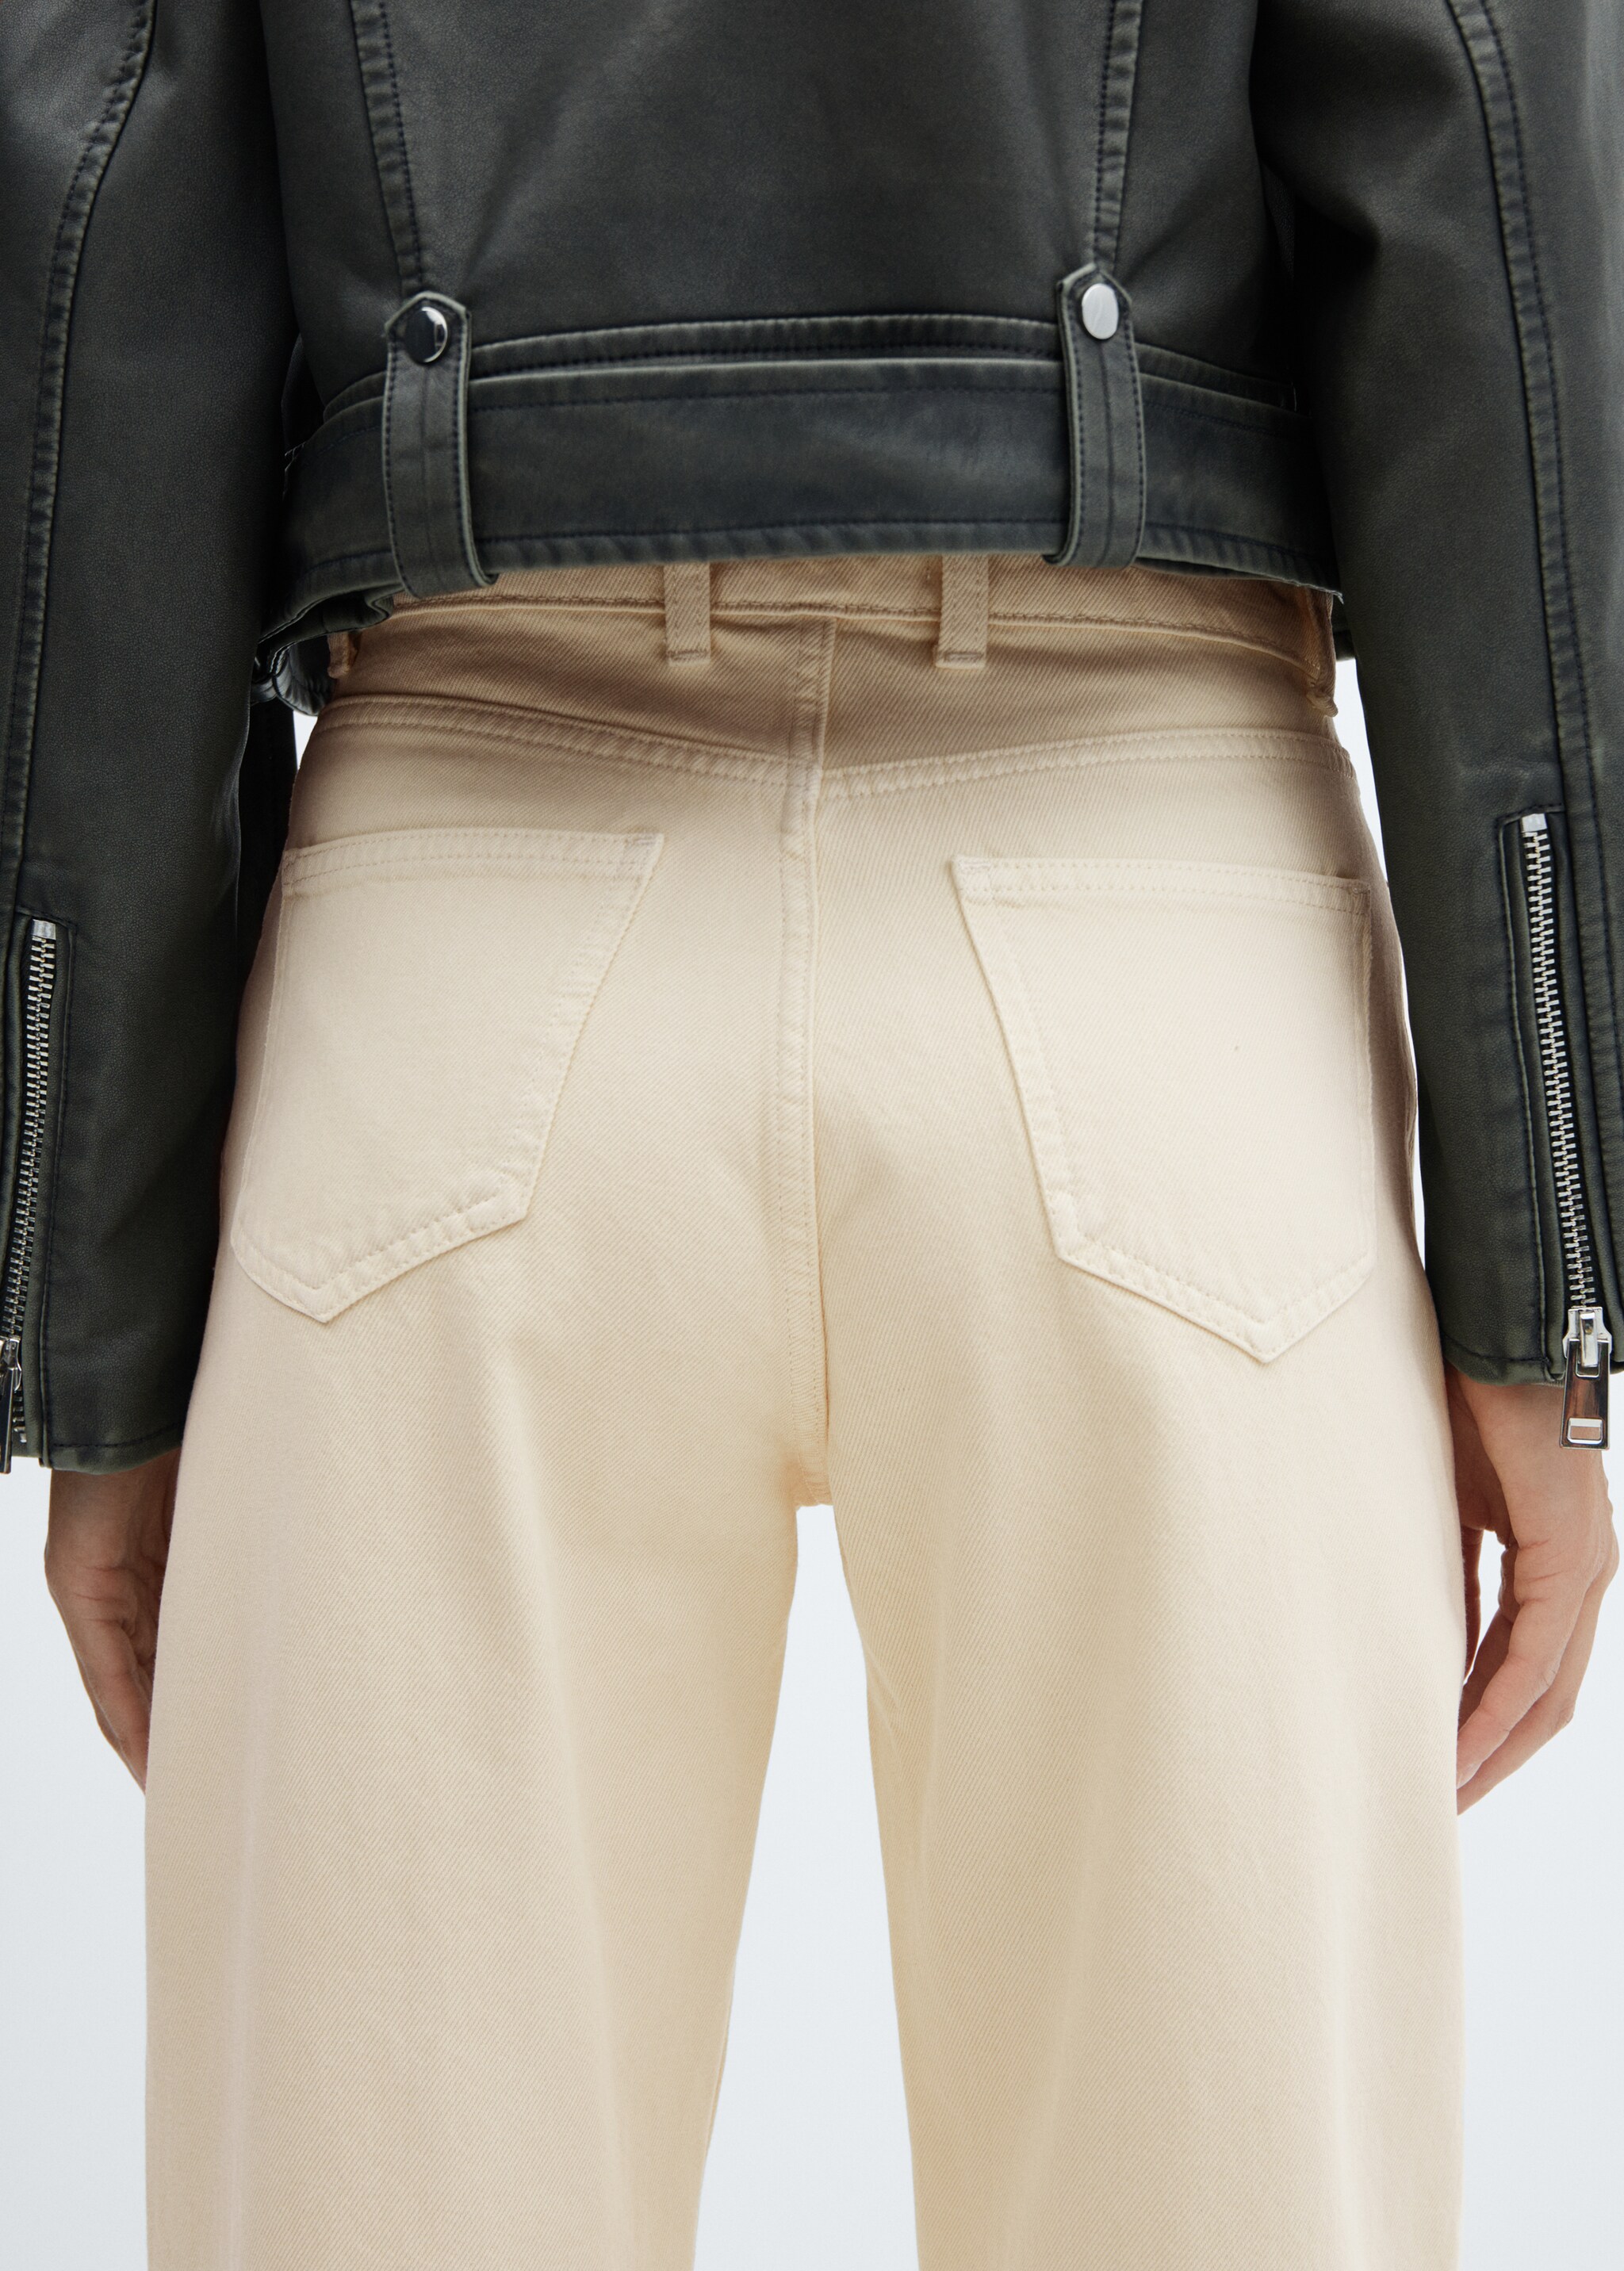 Yüksek bel slouchy jean pantolon  - Ürün detayı 6